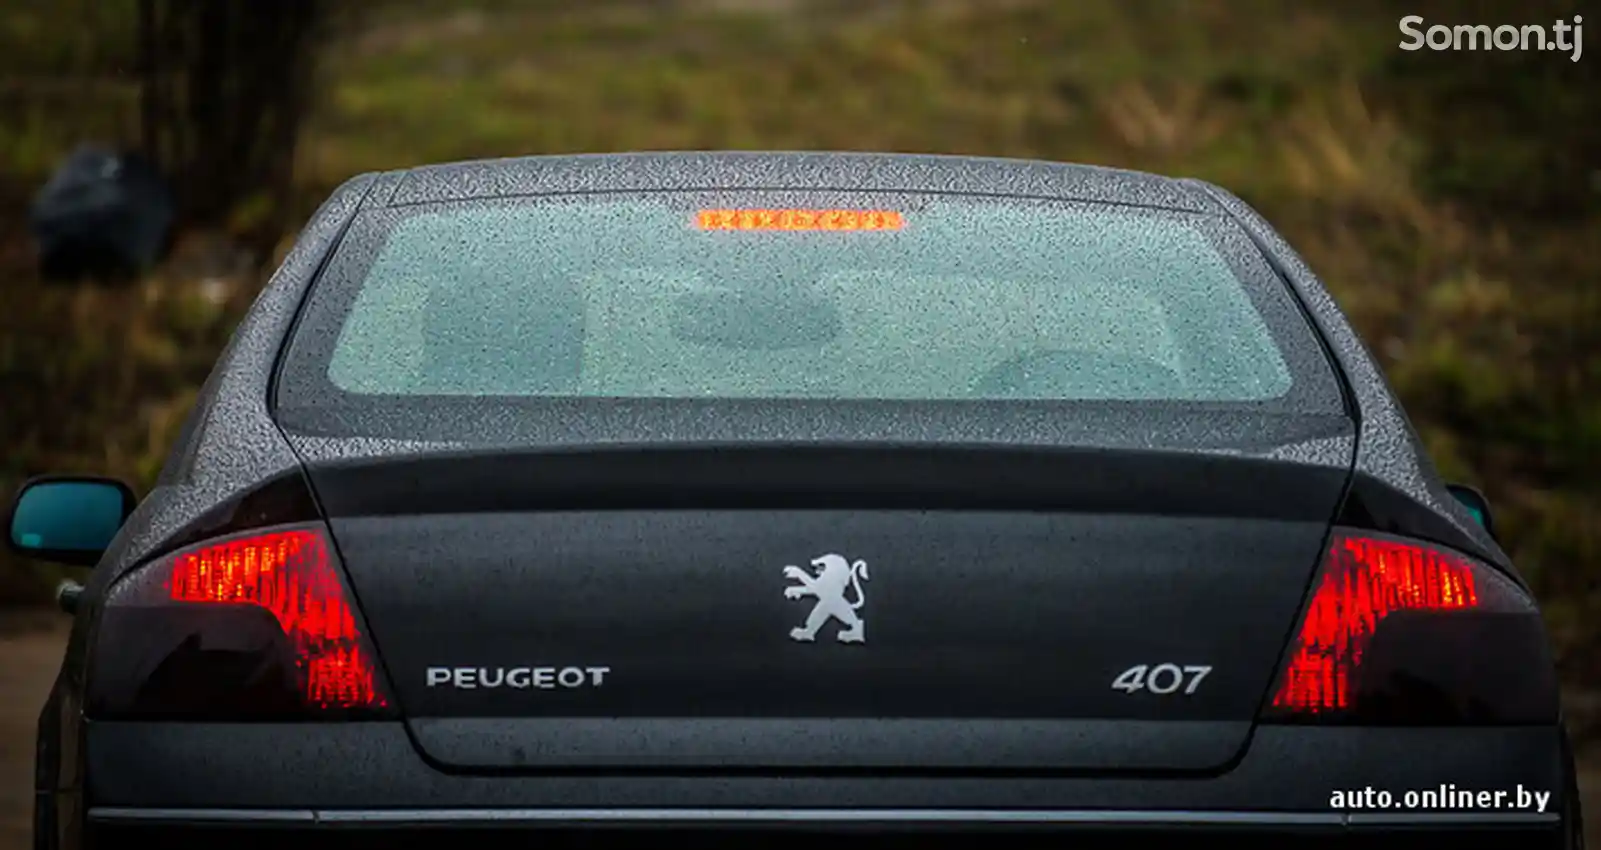 Peugeot 407, 2007-2